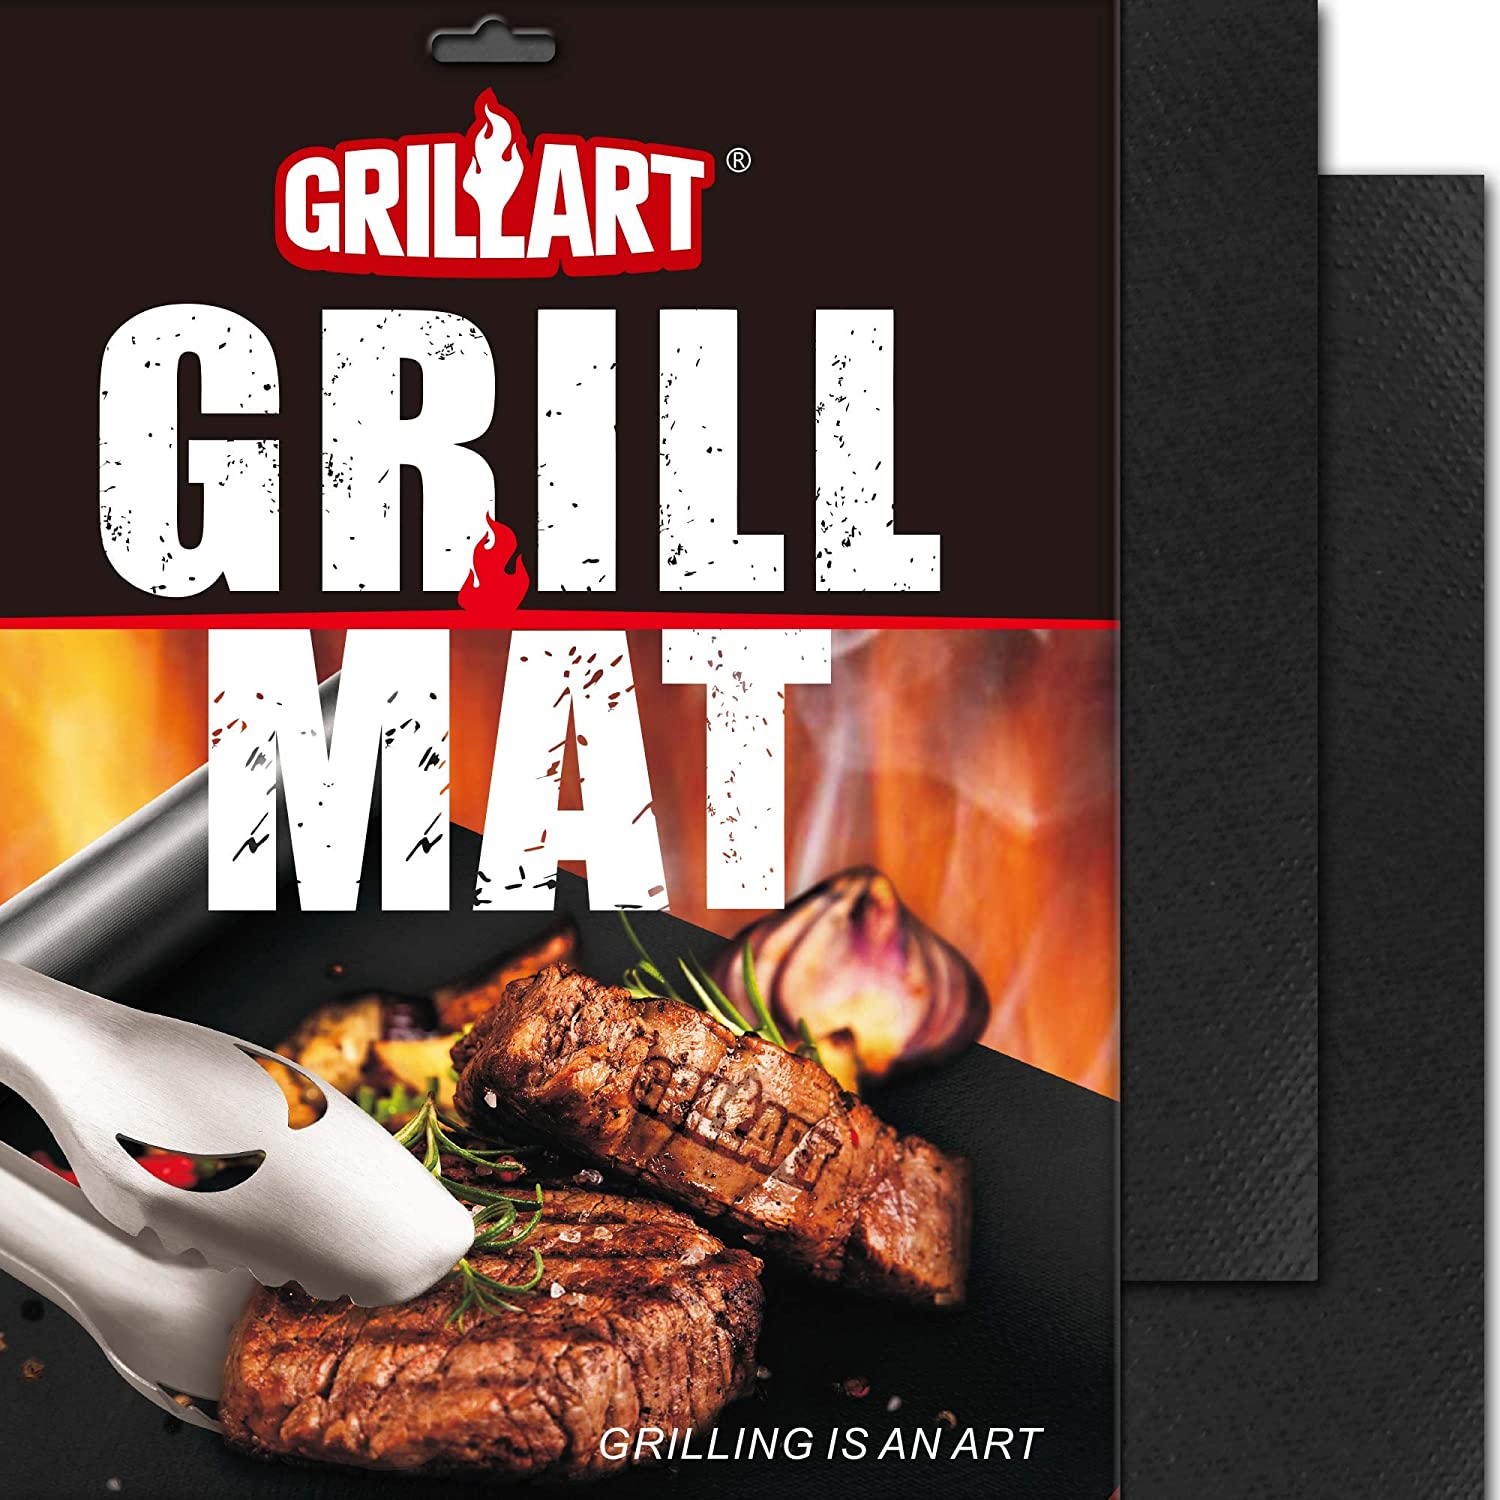 GRILLART Grill Tools Grill Utensils Set - 3PCS BBQ Tools